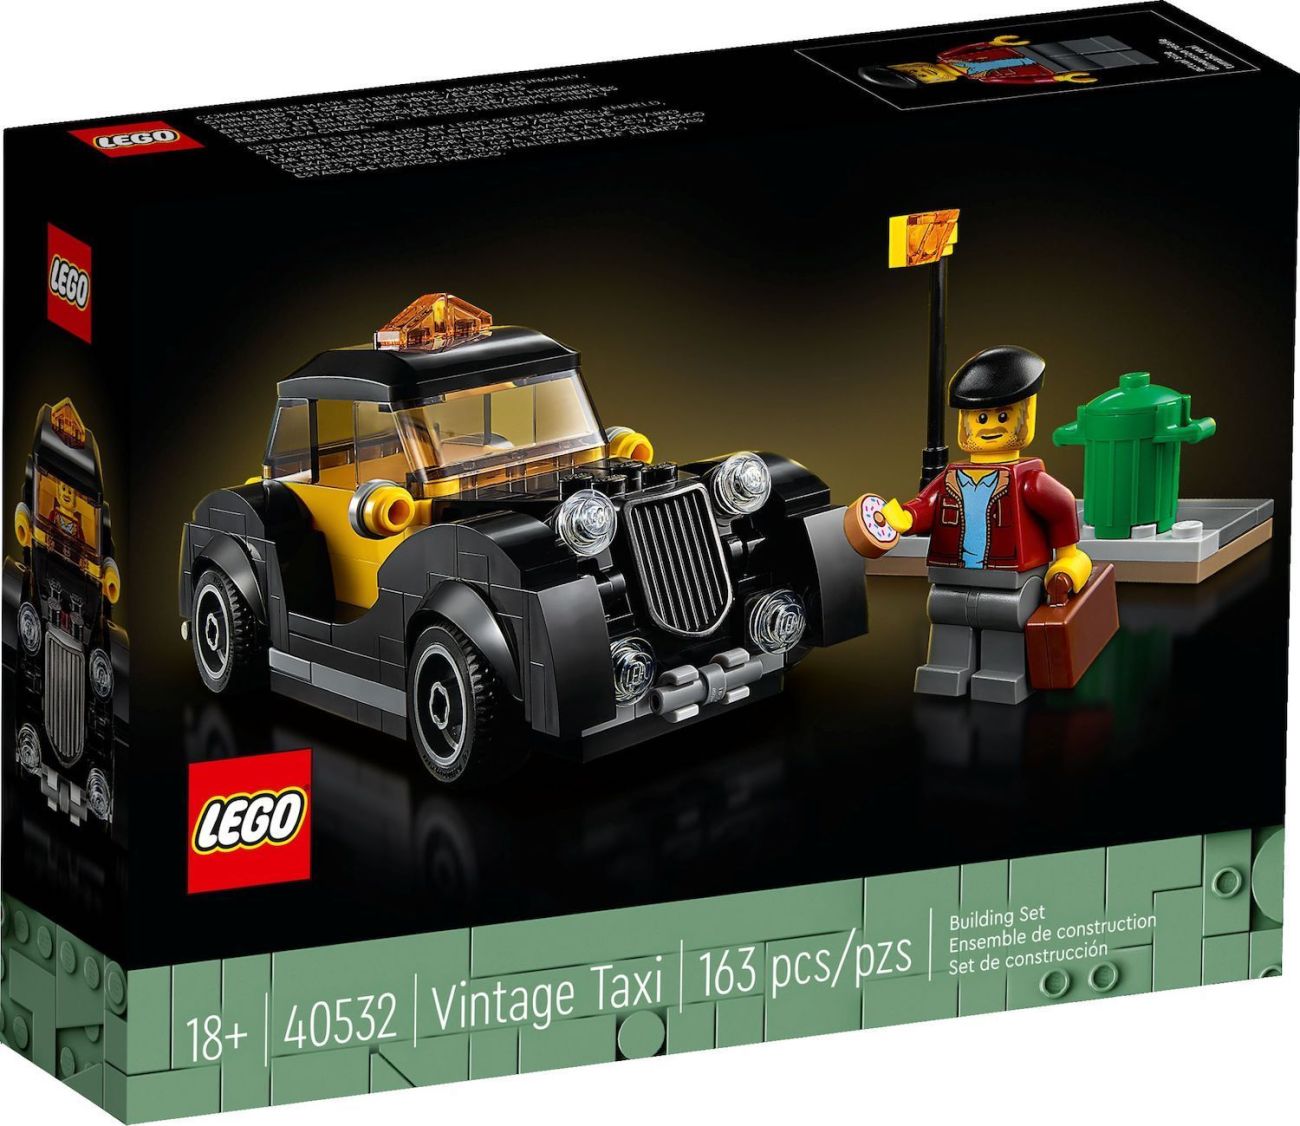 LEGO-40532-Vintage-Taxi